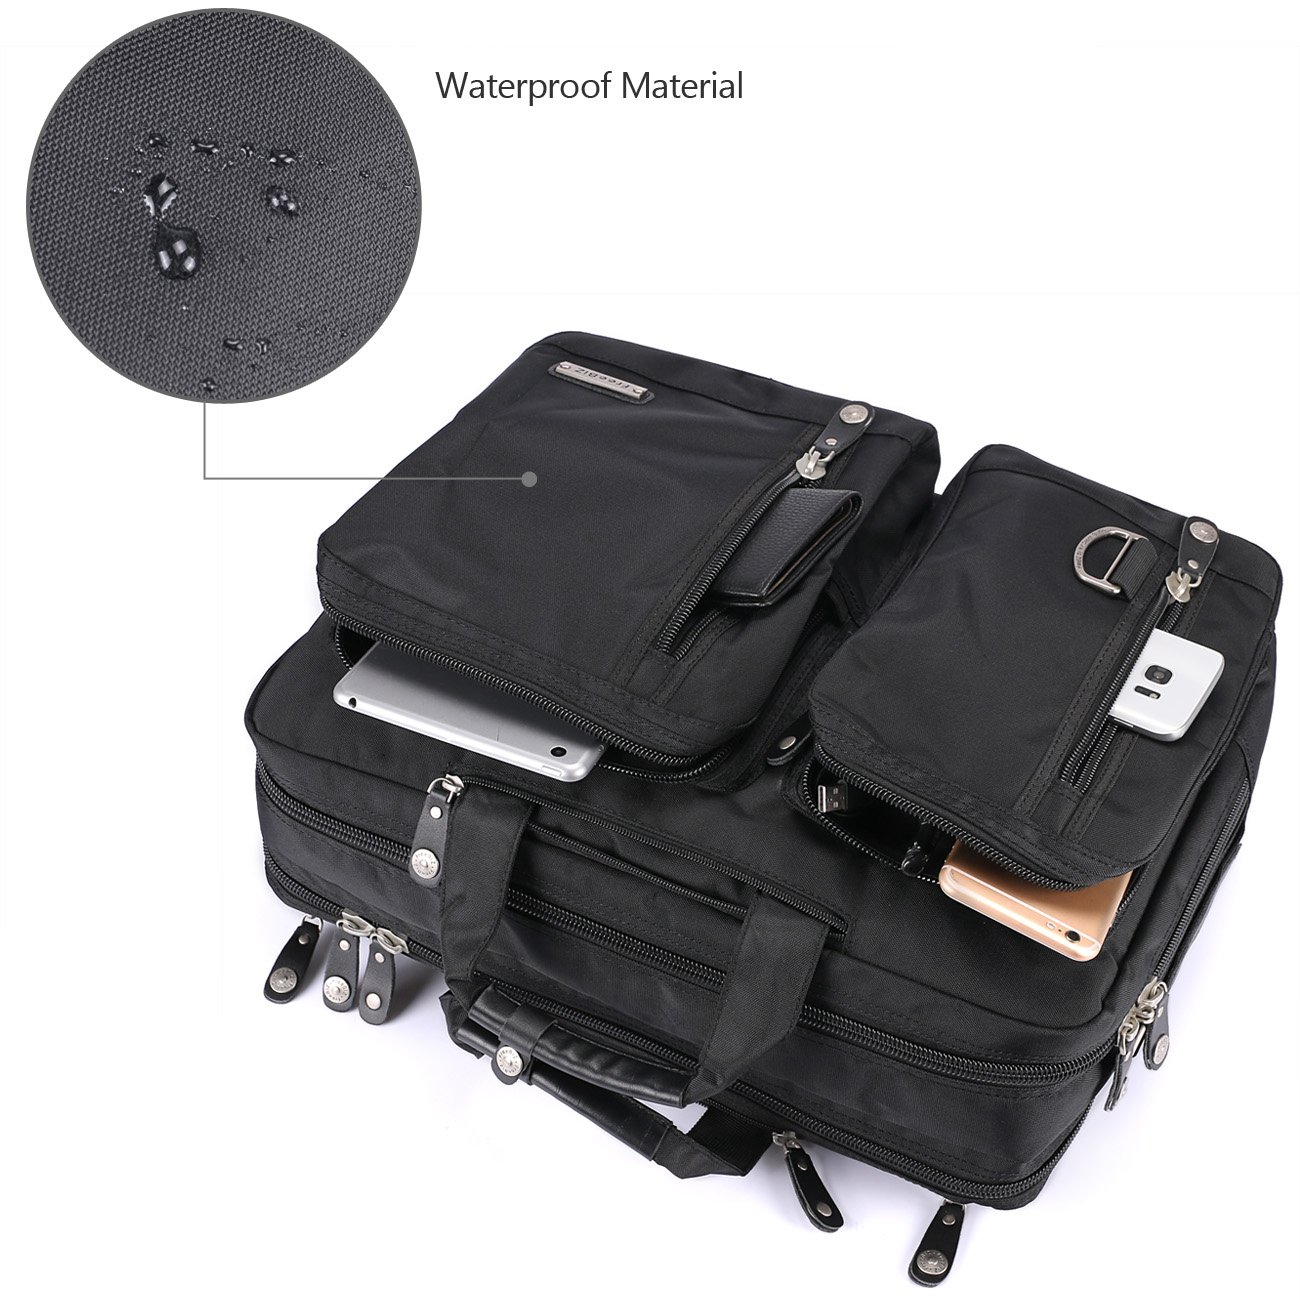 FreeBiz 18.4 Inch Laptop Briefcase Backpack Messenger Shoulder Bag 18 Inch Gaming Notebook Computer Case Handbag for Business Travel